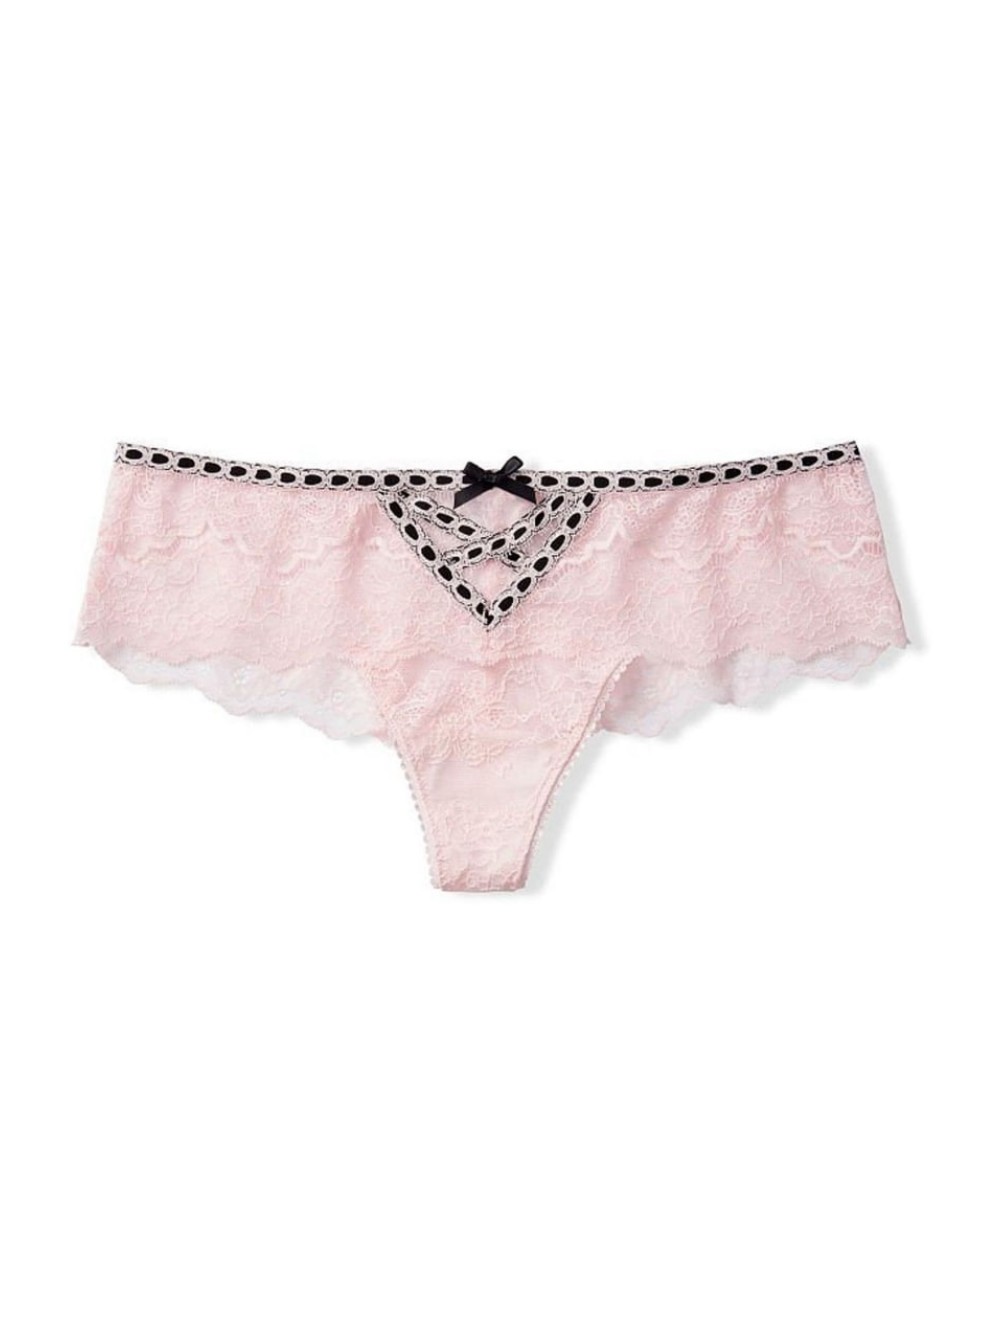 Трусики Dream Angels Rose Lace Wide side Thong panty купити недорого в  Києві, ціна в Україні — SecretAngeL